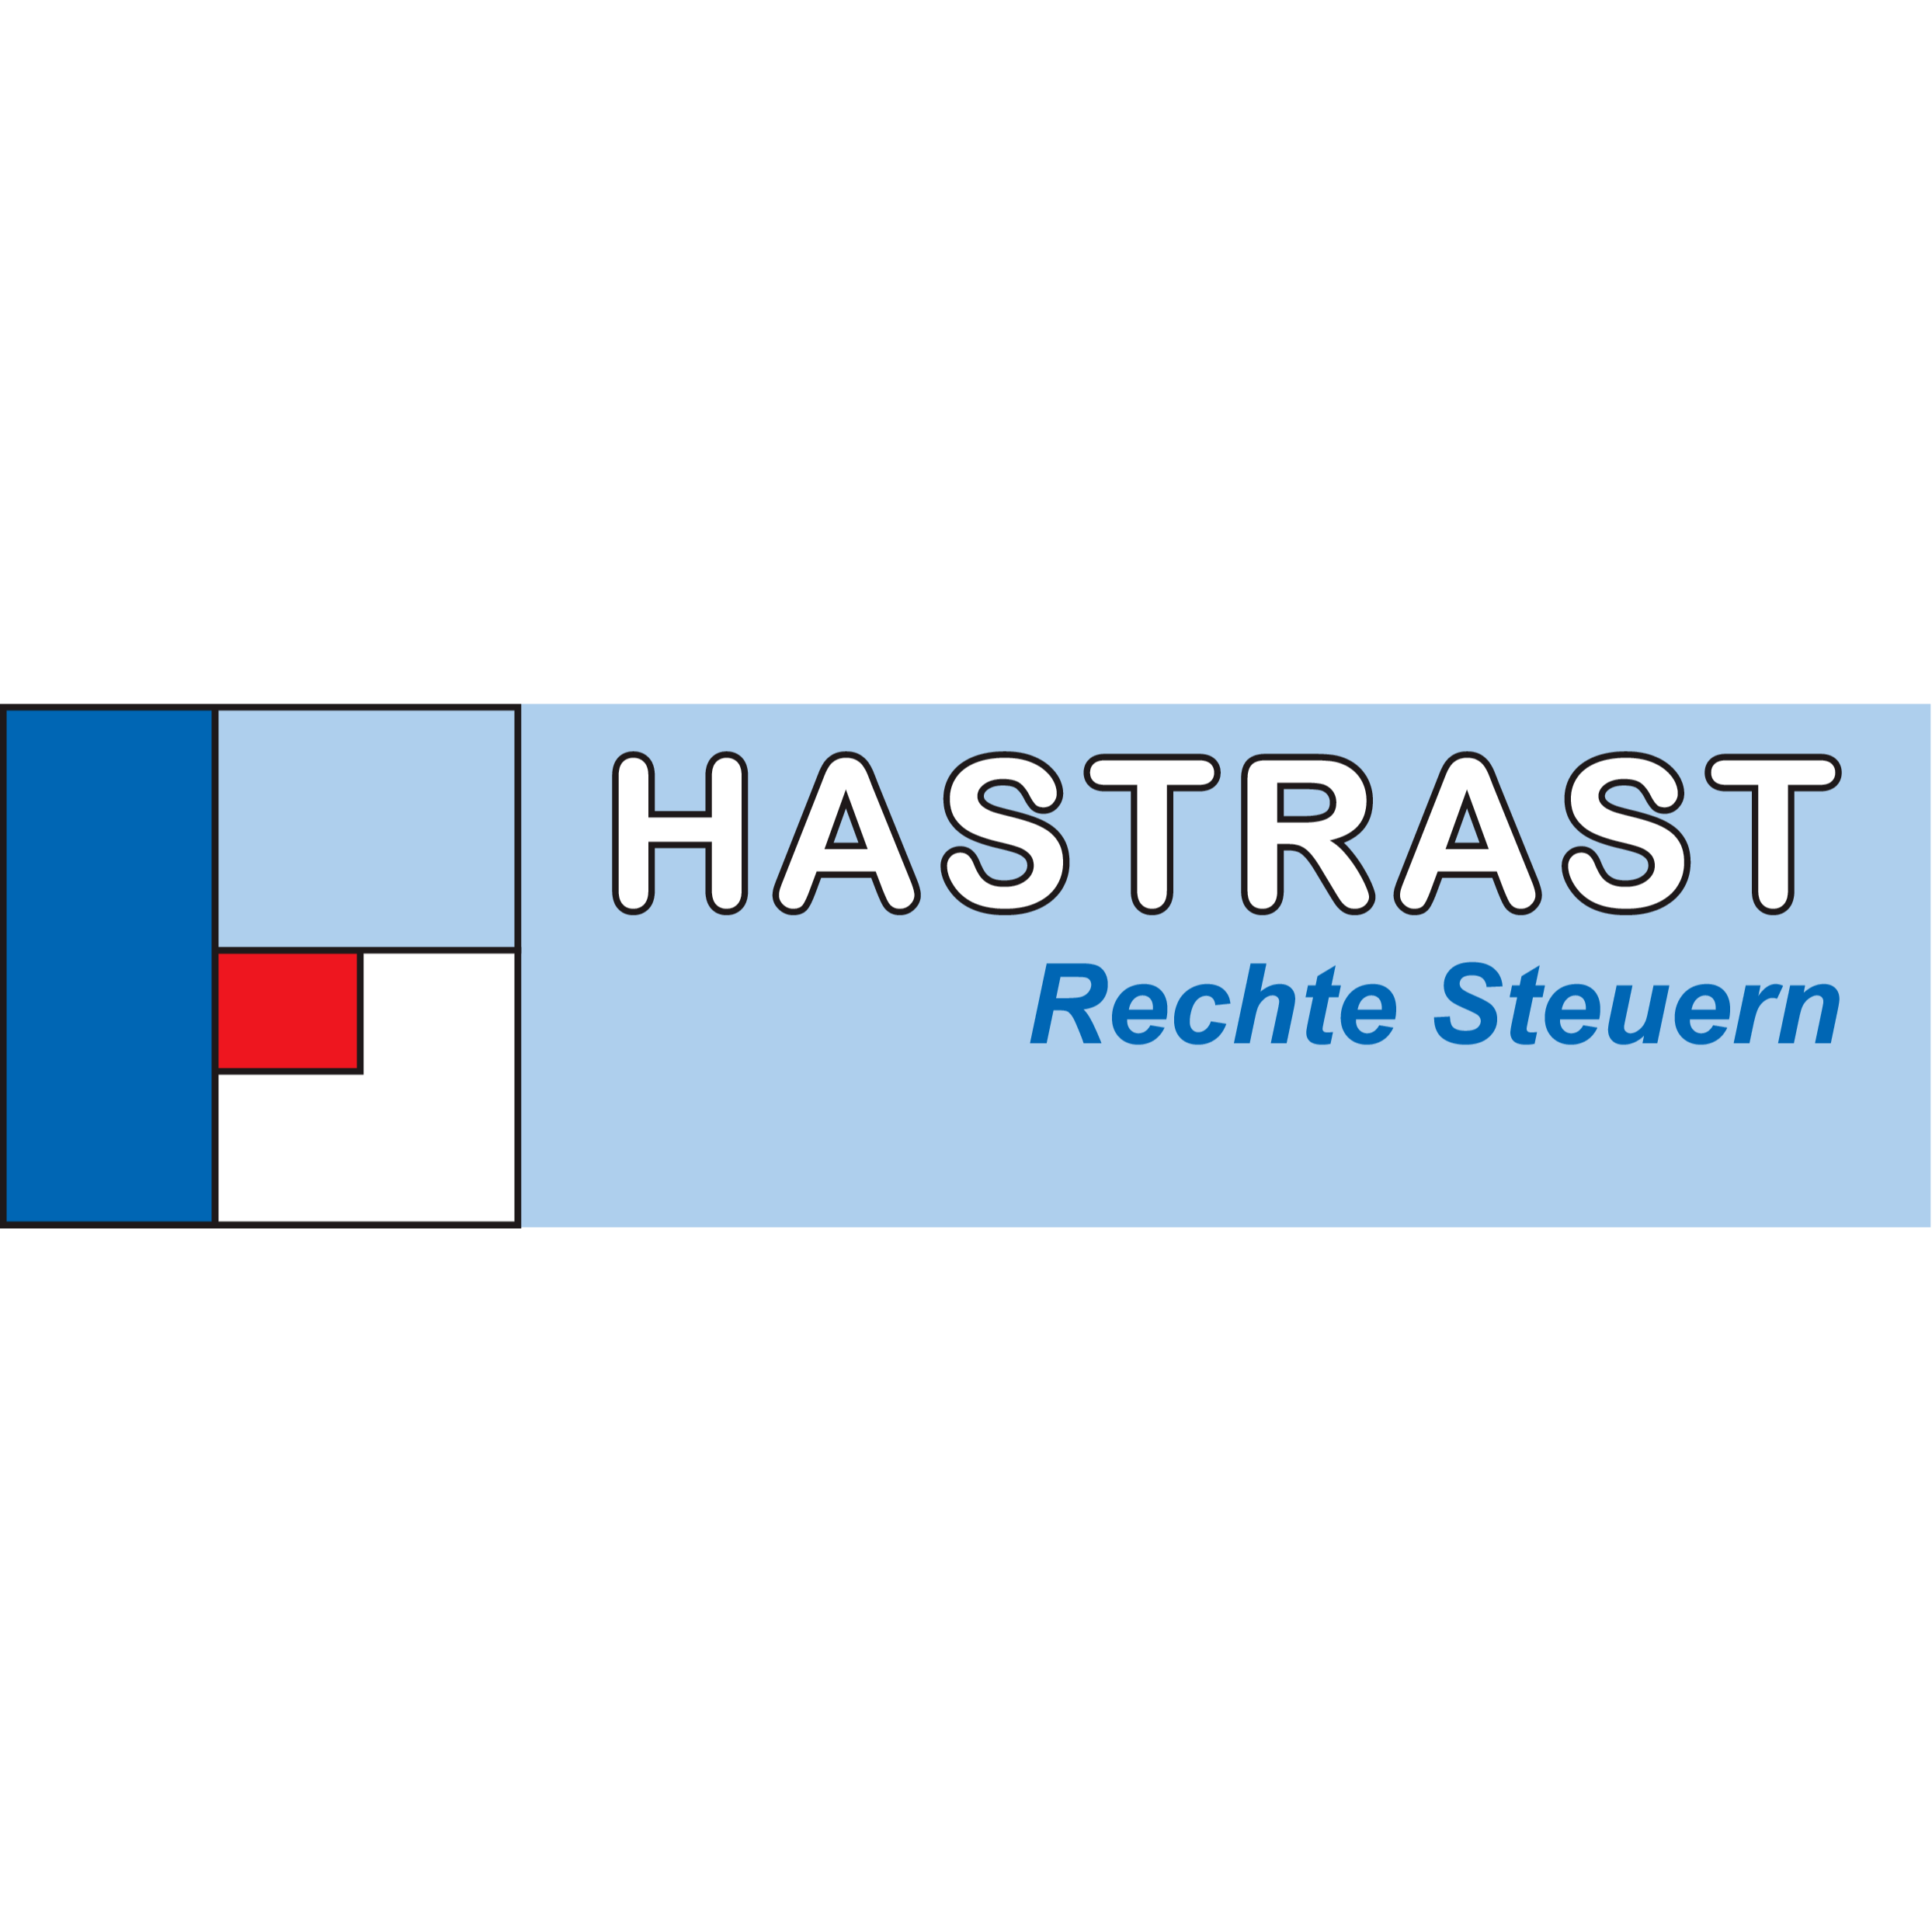 HASTRAST - Rechte Steuern in Erbendorf - Logo